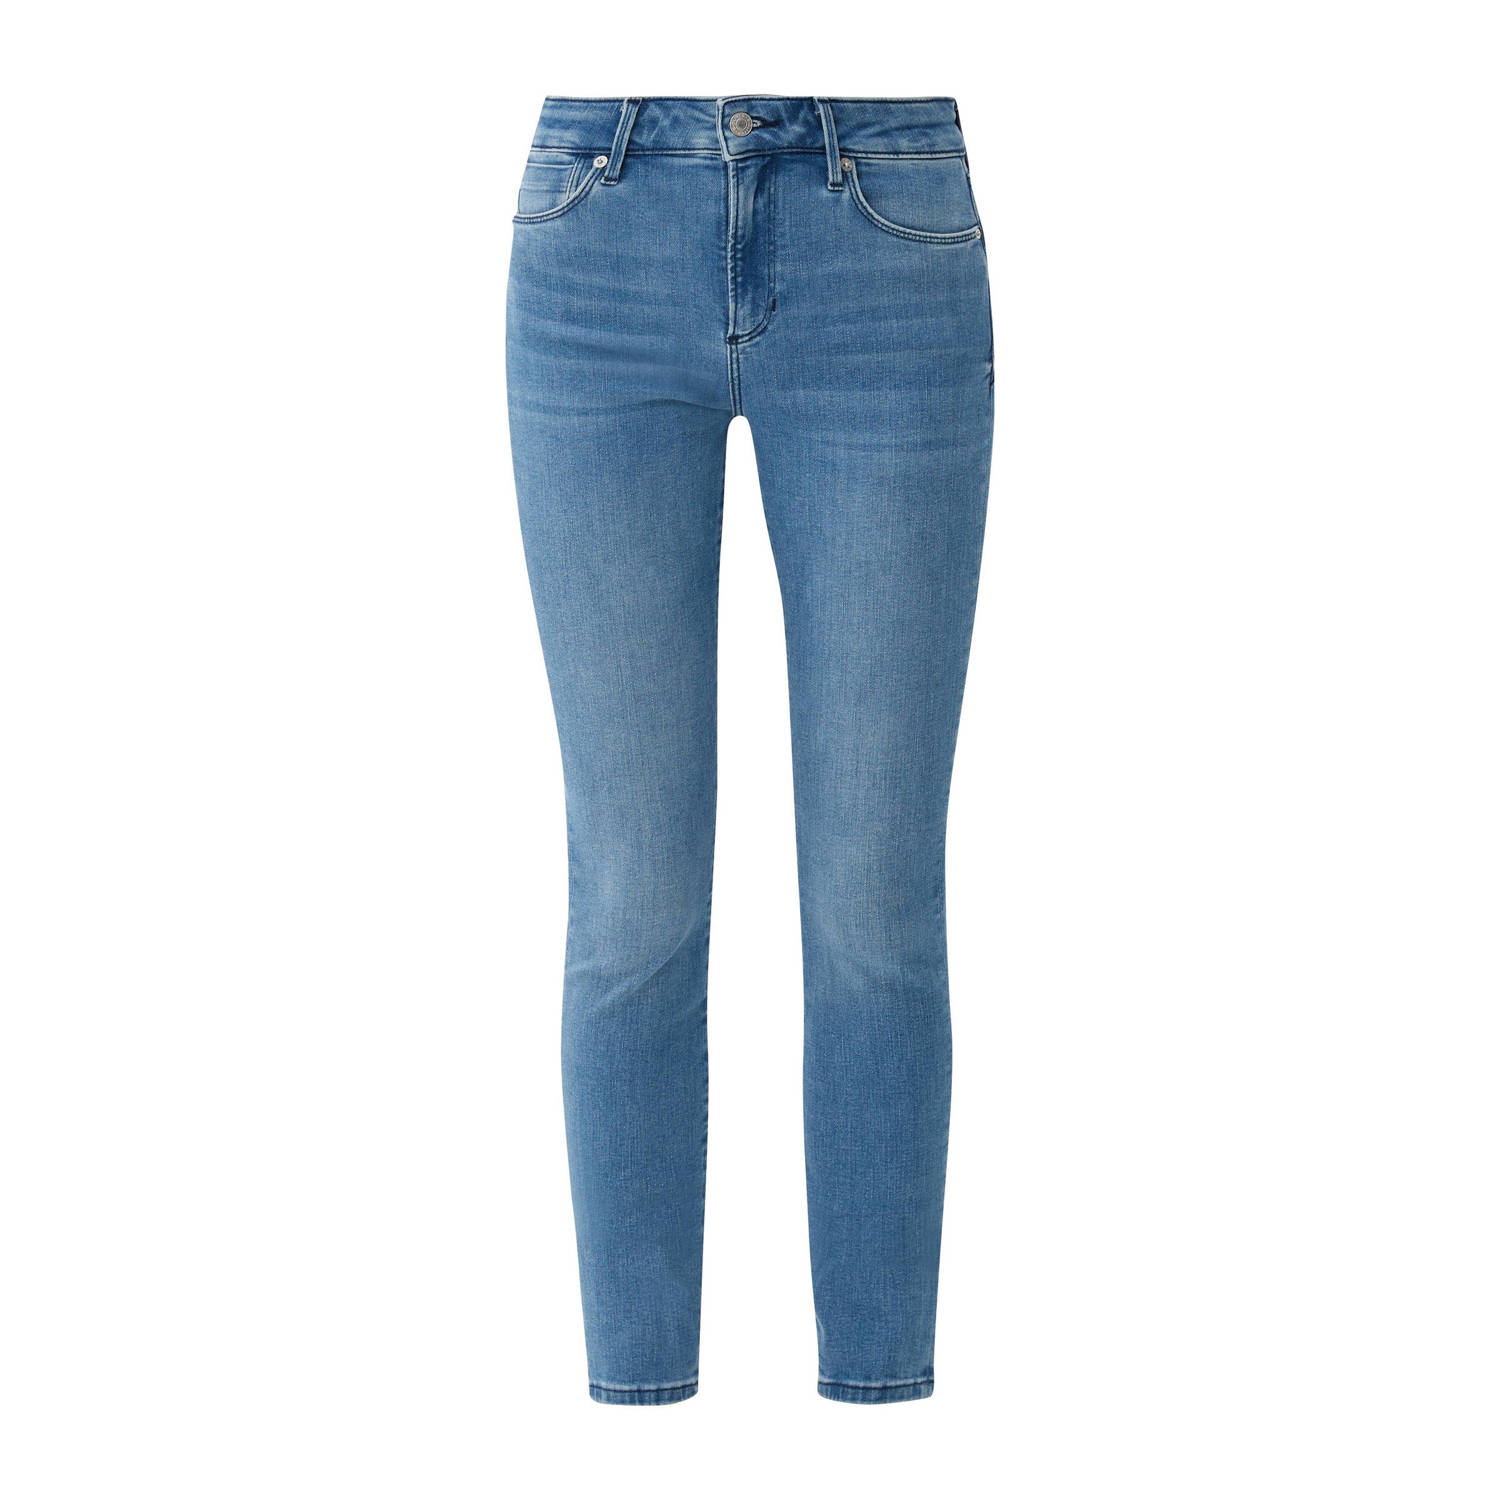 S.Oliver skinny jeans light blue denim